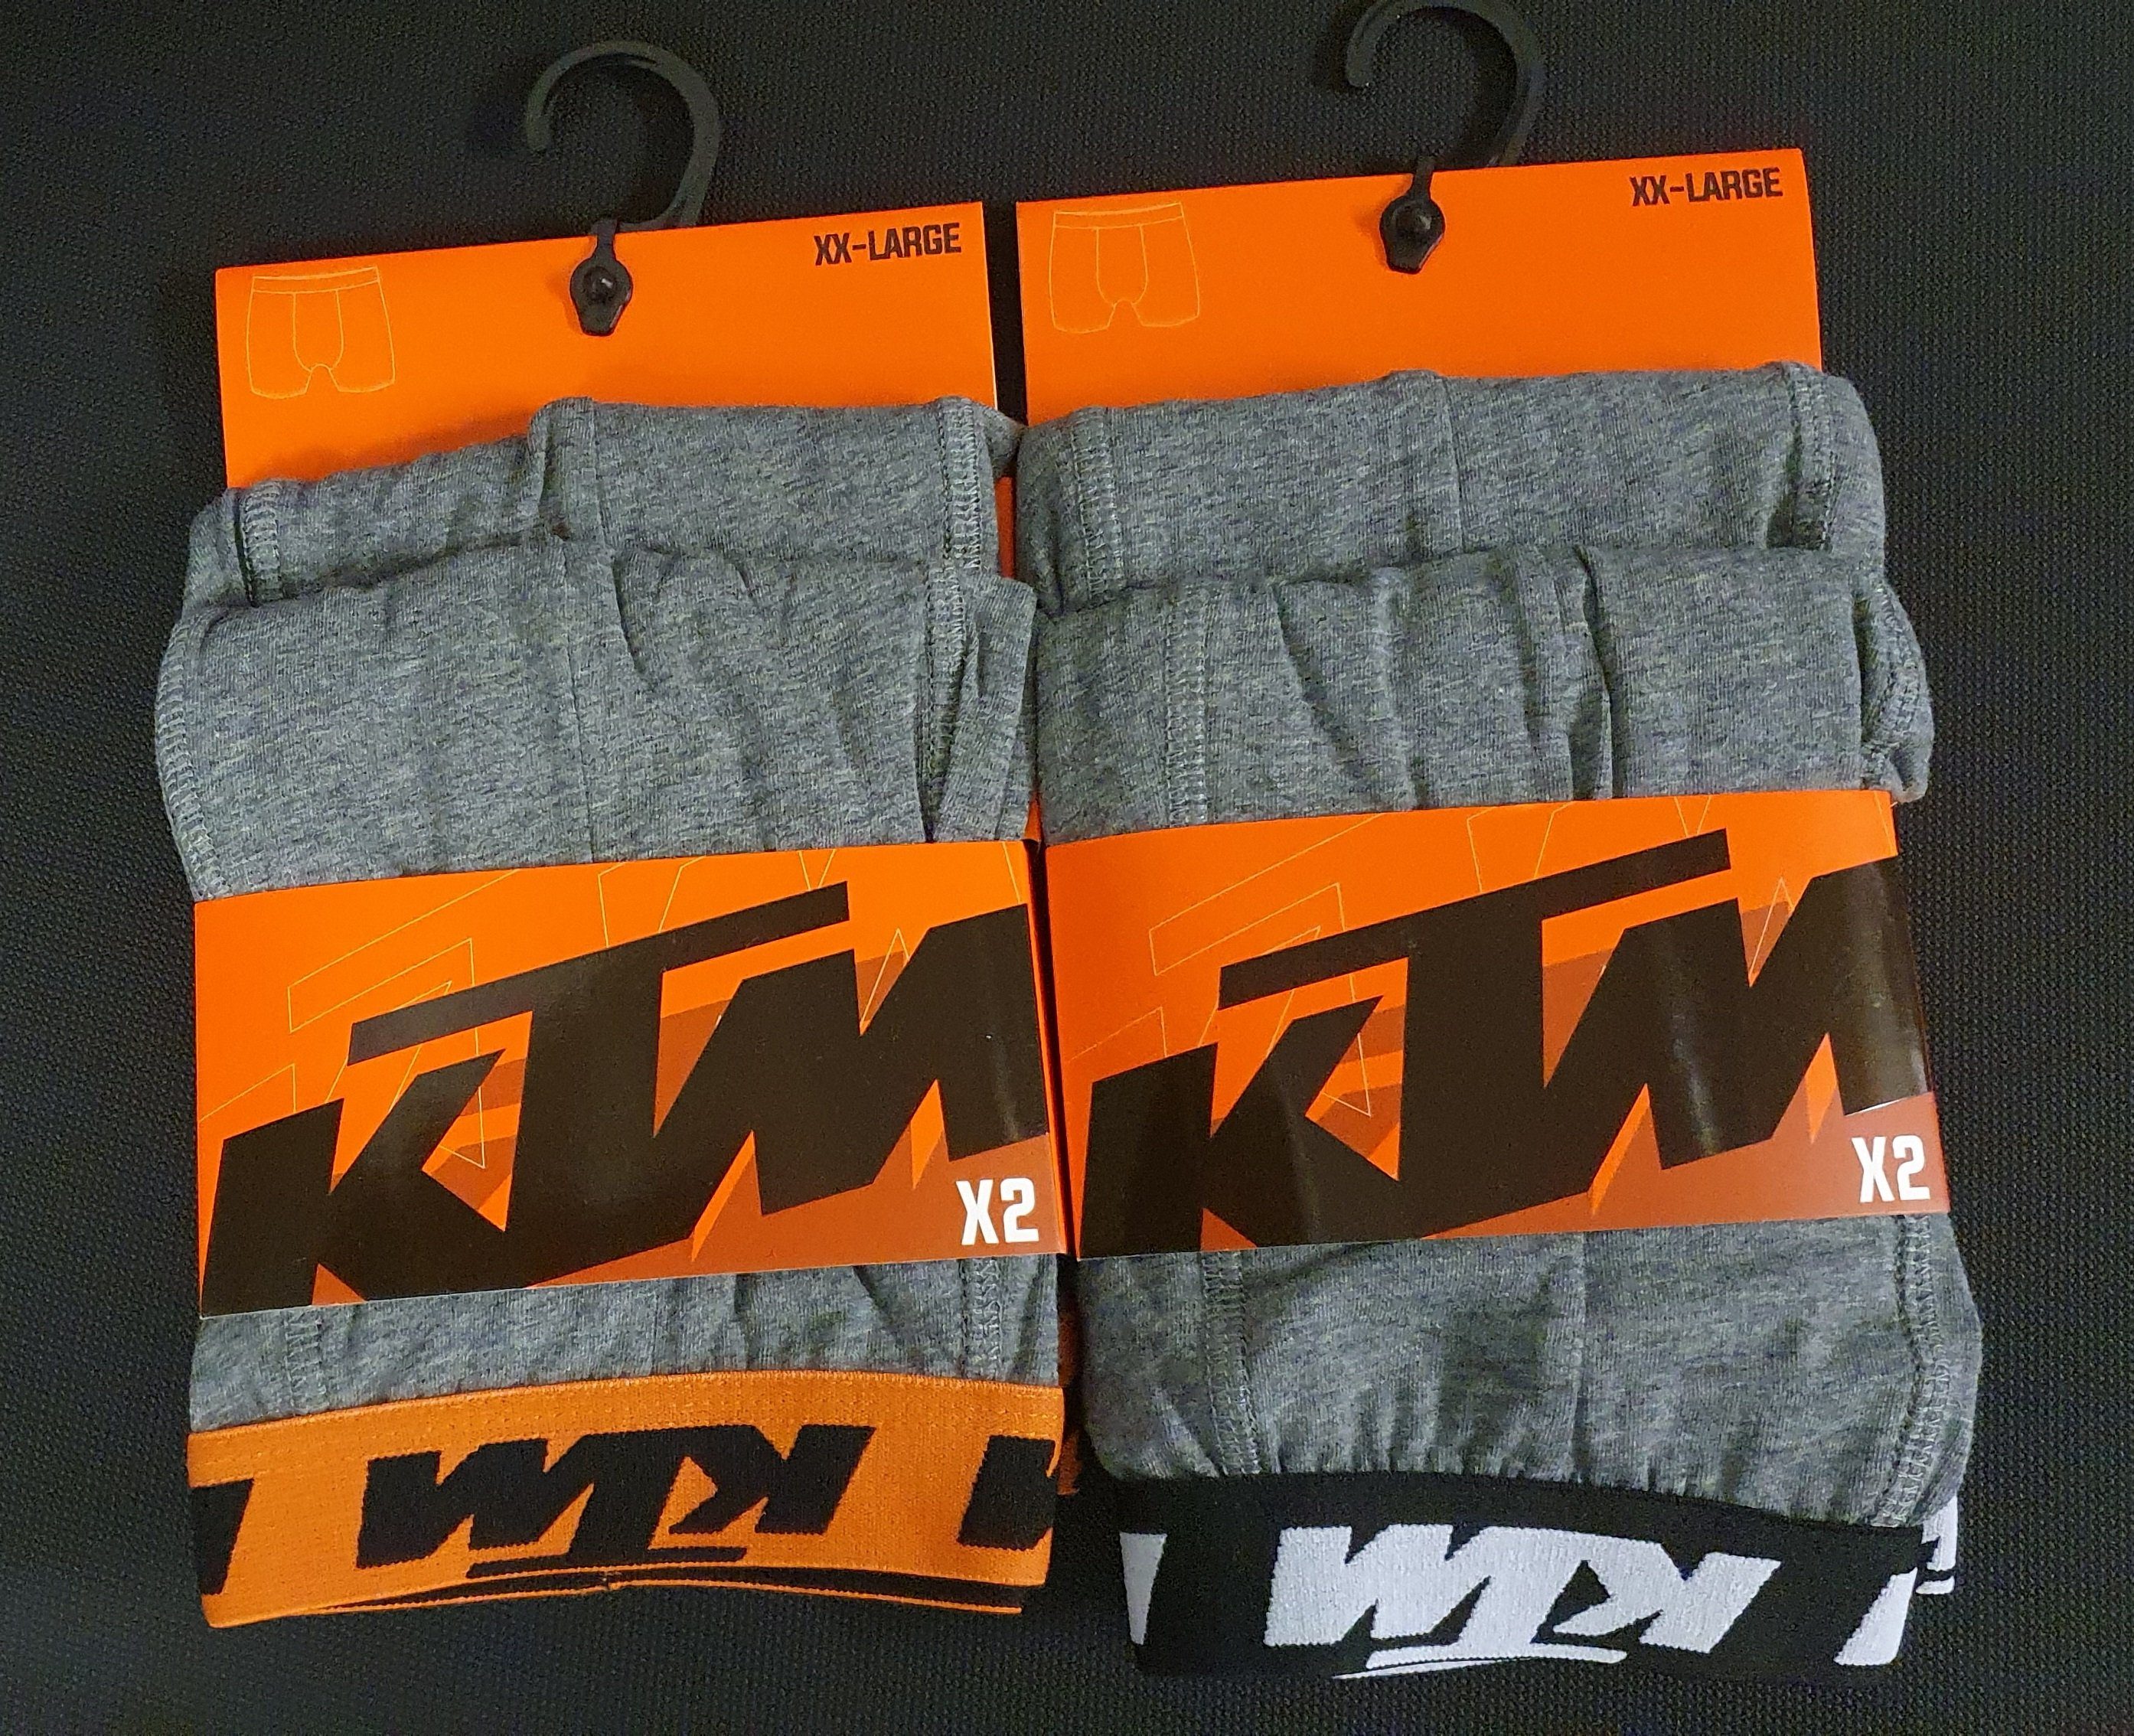 Outdoorsport Boxershorts mit Unterhose Hüft-Shorts grau-schwarz Men Taillenbund KTM Logo auf (2er-Pack) dem Basic